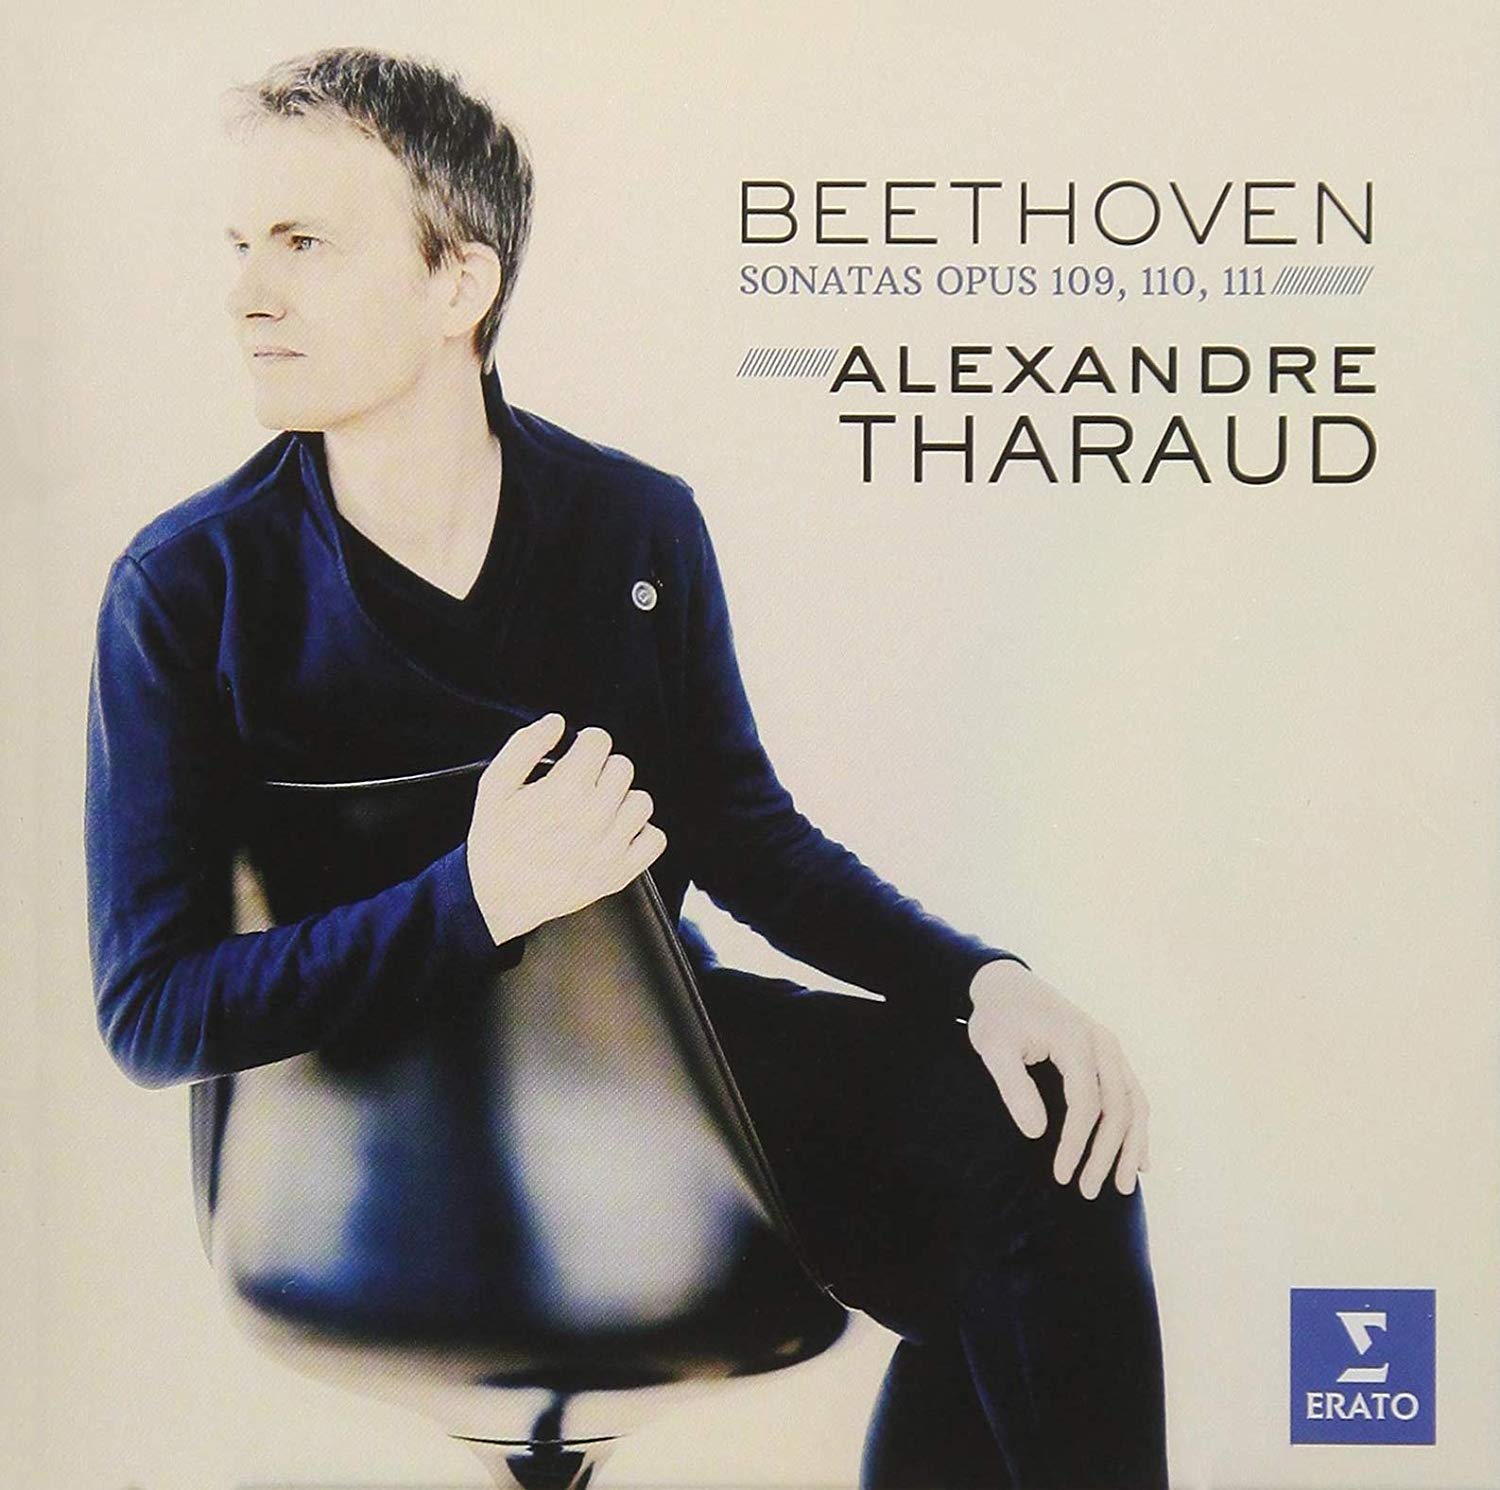 Audio Cd Ludwig Van Beethoven - Piano Sonata 30-32 NUOVO SIGILLATO, EDIZIONE DEL 19/10/2018 SUBITO DISPONIBILE